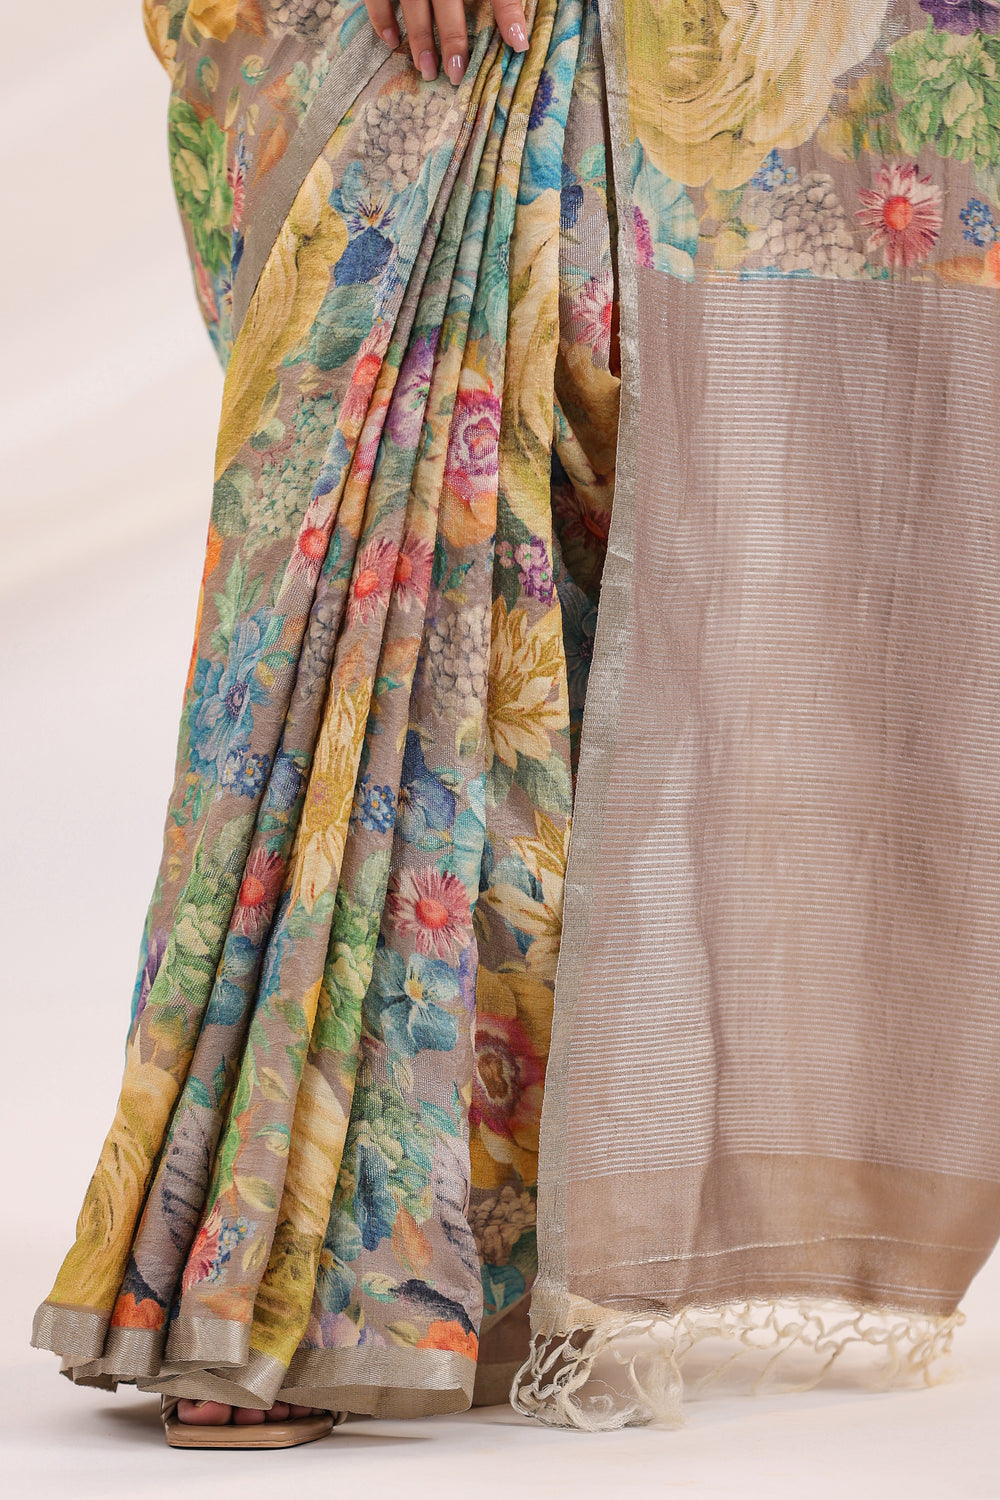 Handwoven Banarasi Printed Tussar Silk Saree